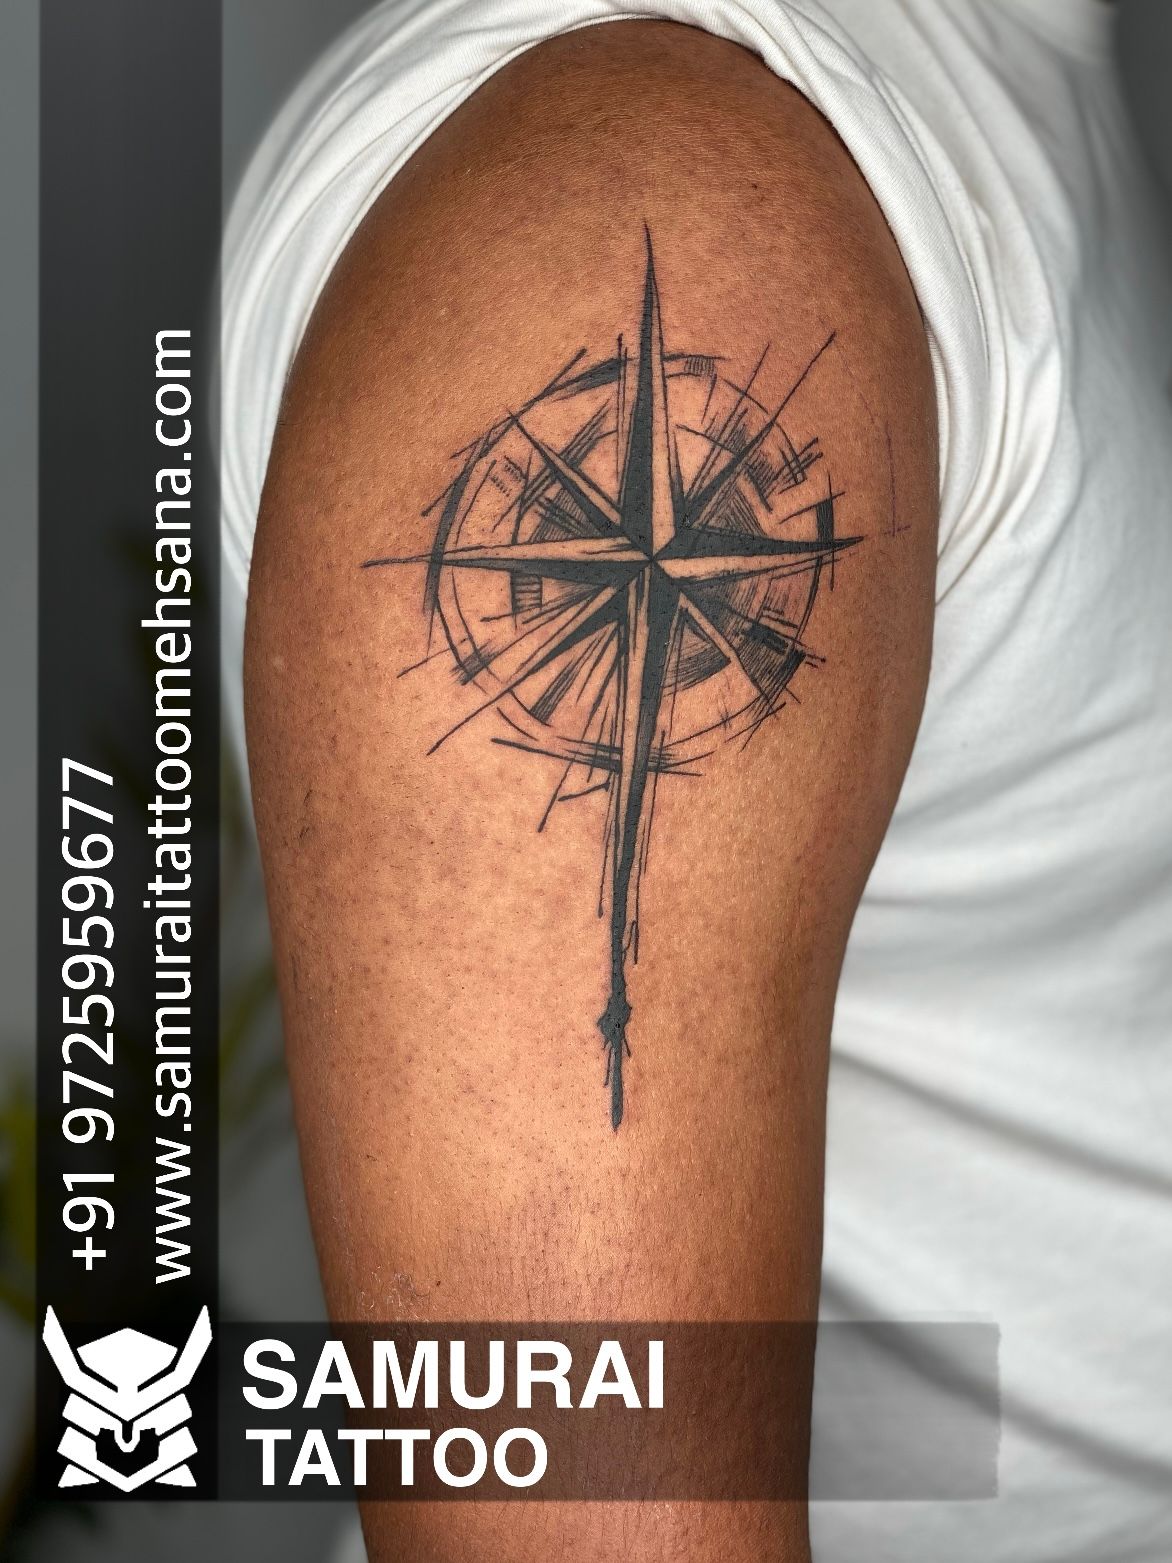 Nautical Ship & Compass tattoo design I made : r/TattooDesigns